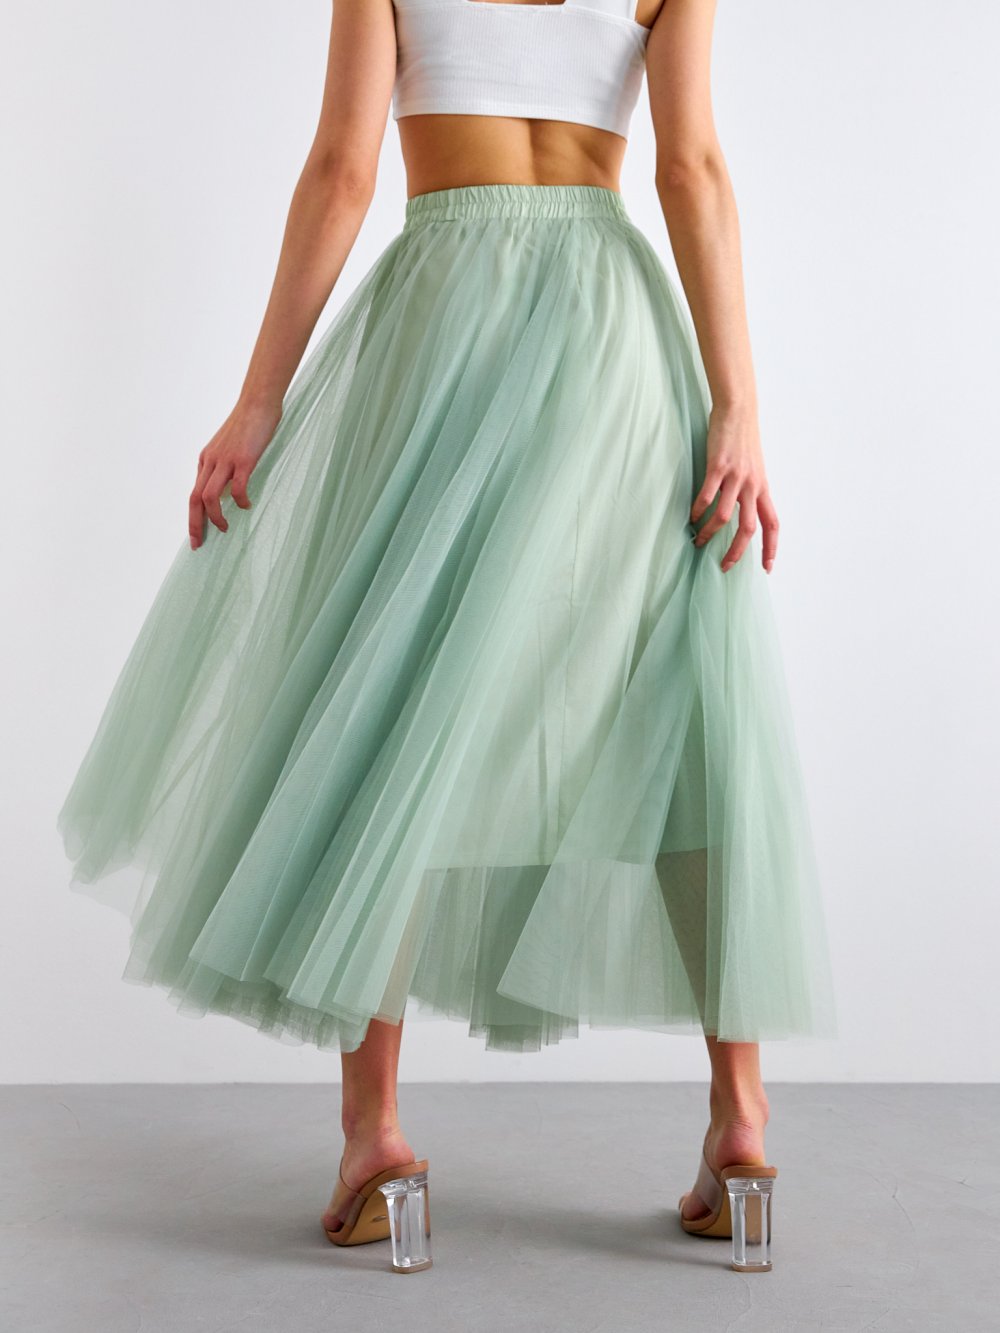 Bledozelená tylová sukňa Lia